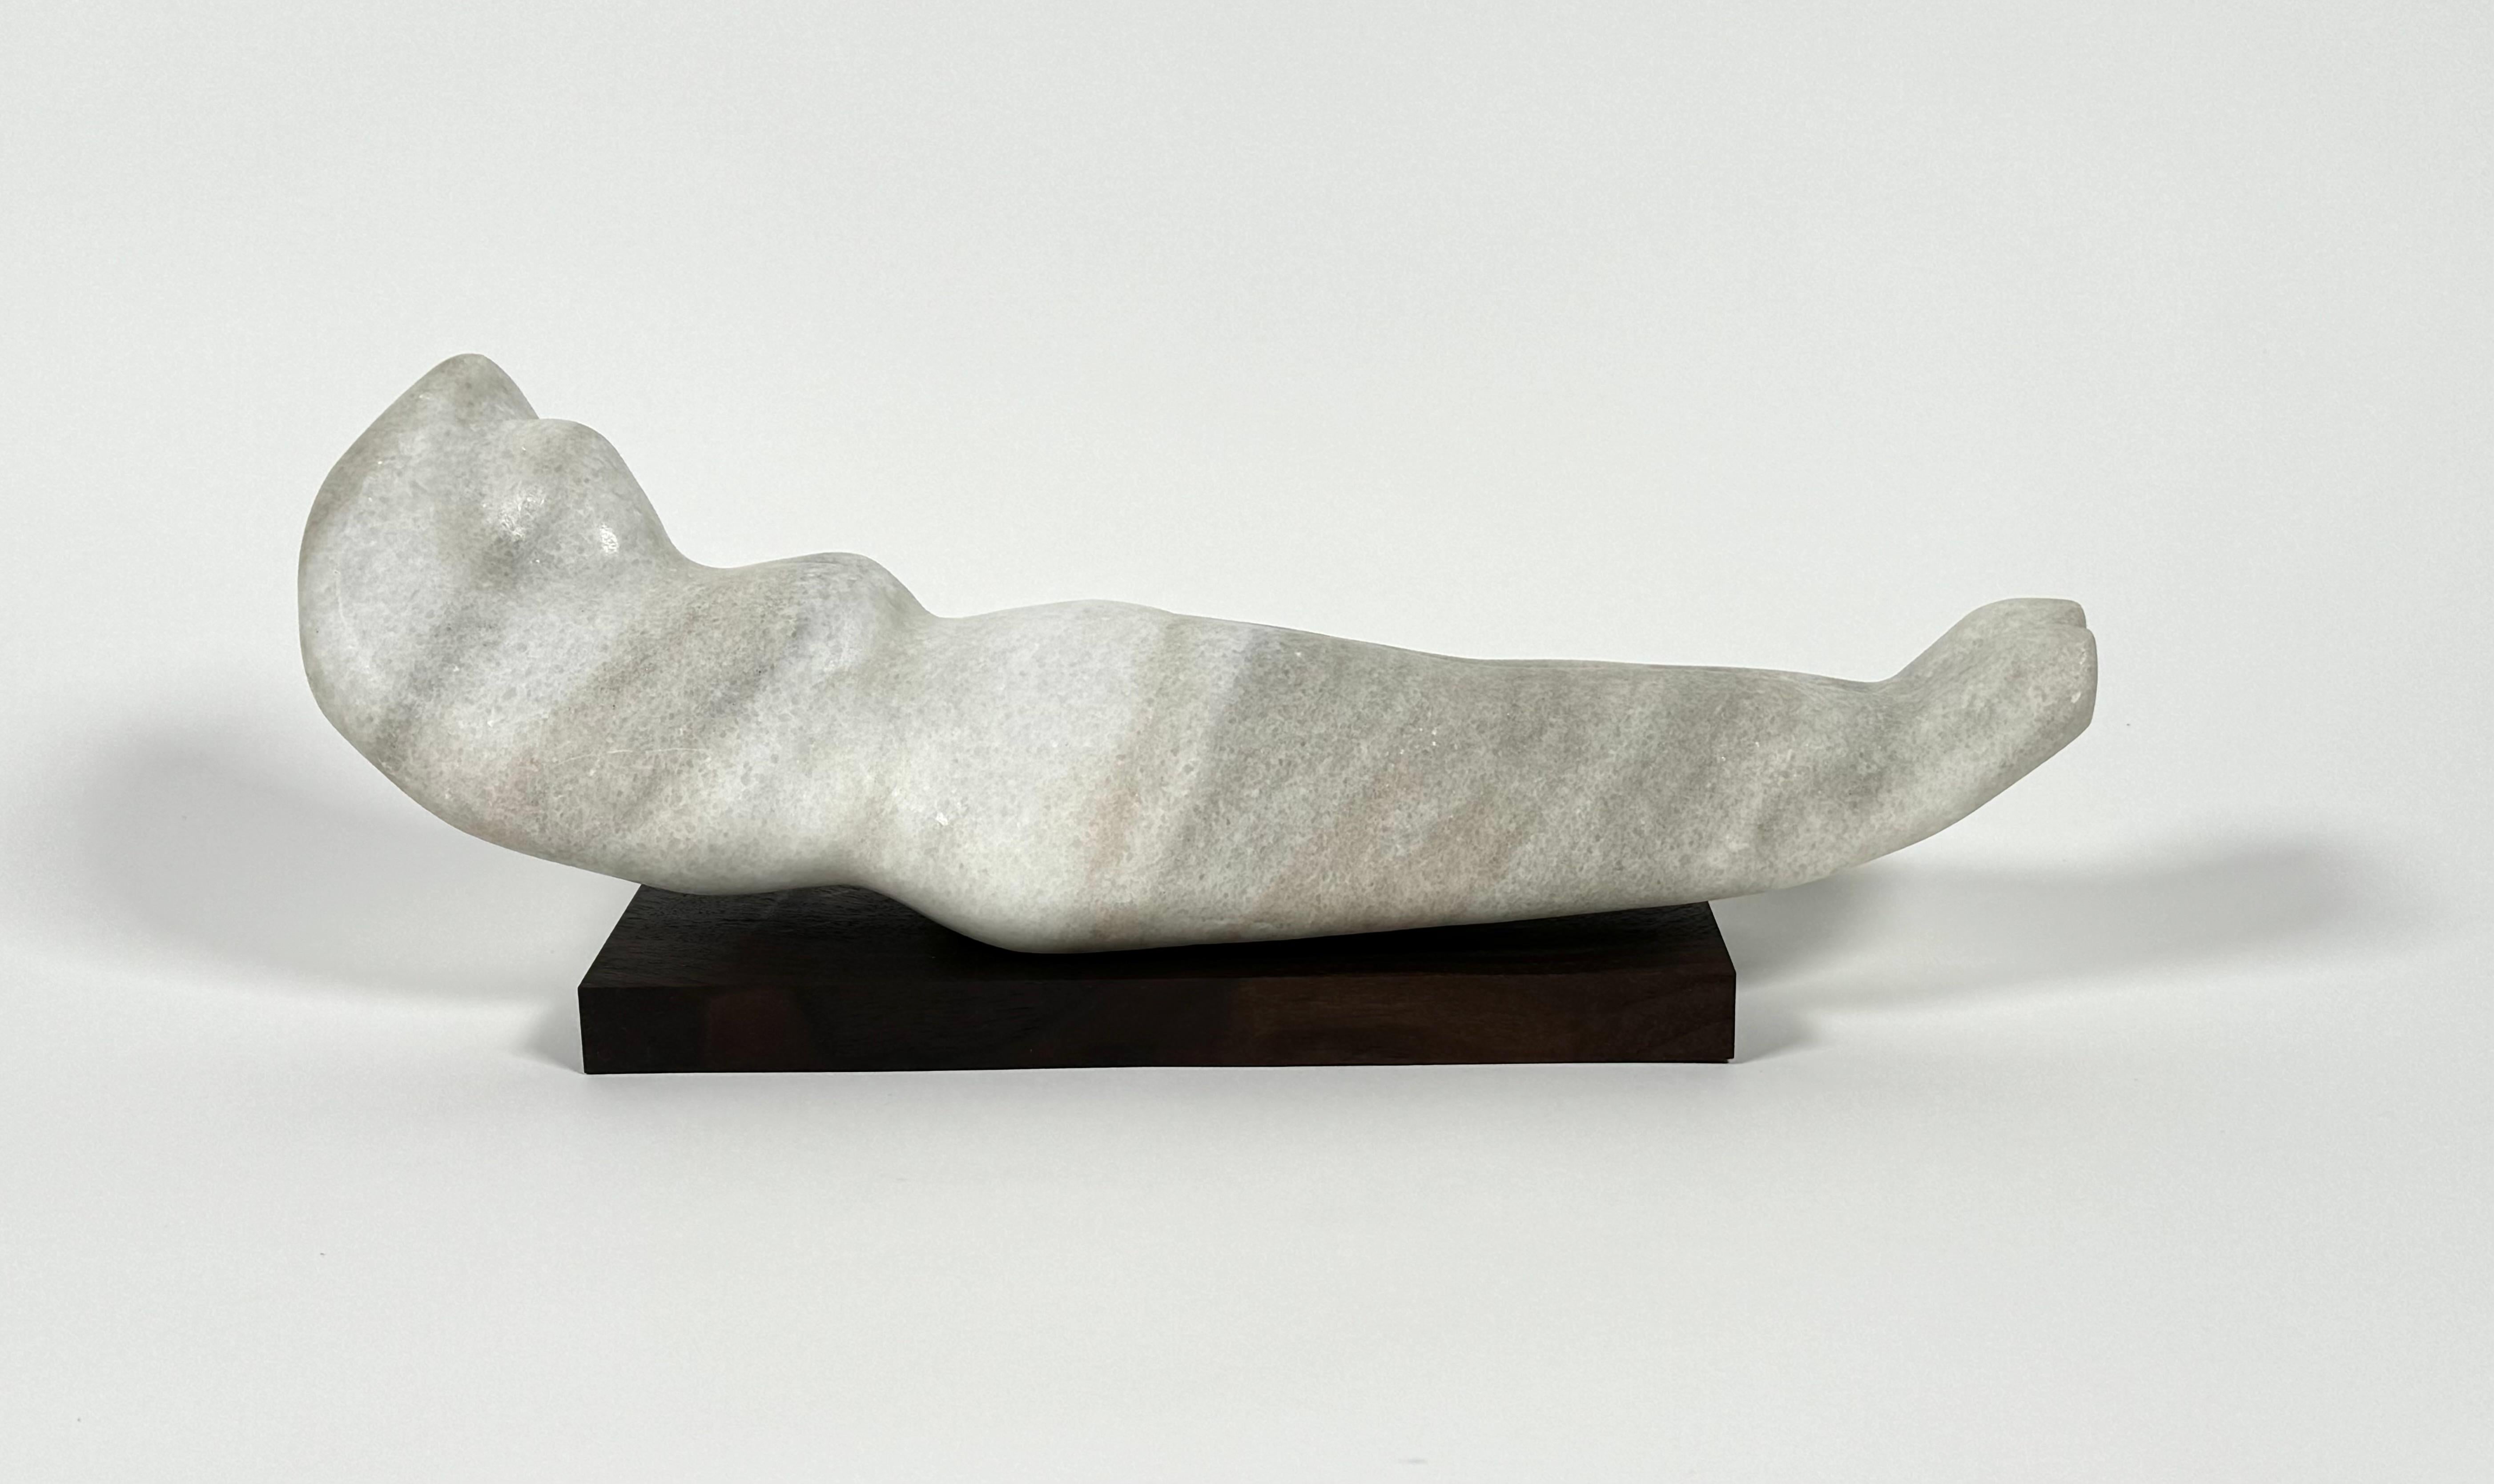 Sculpture figurative abstraite en marbre sur une base en noyer, une étude naïve de la forme féminine, peut-être une étudiante en travaux artistiques. La forme allongée repose sur un socle en noyer noir. Le marbre présente un léger veinage gris sur